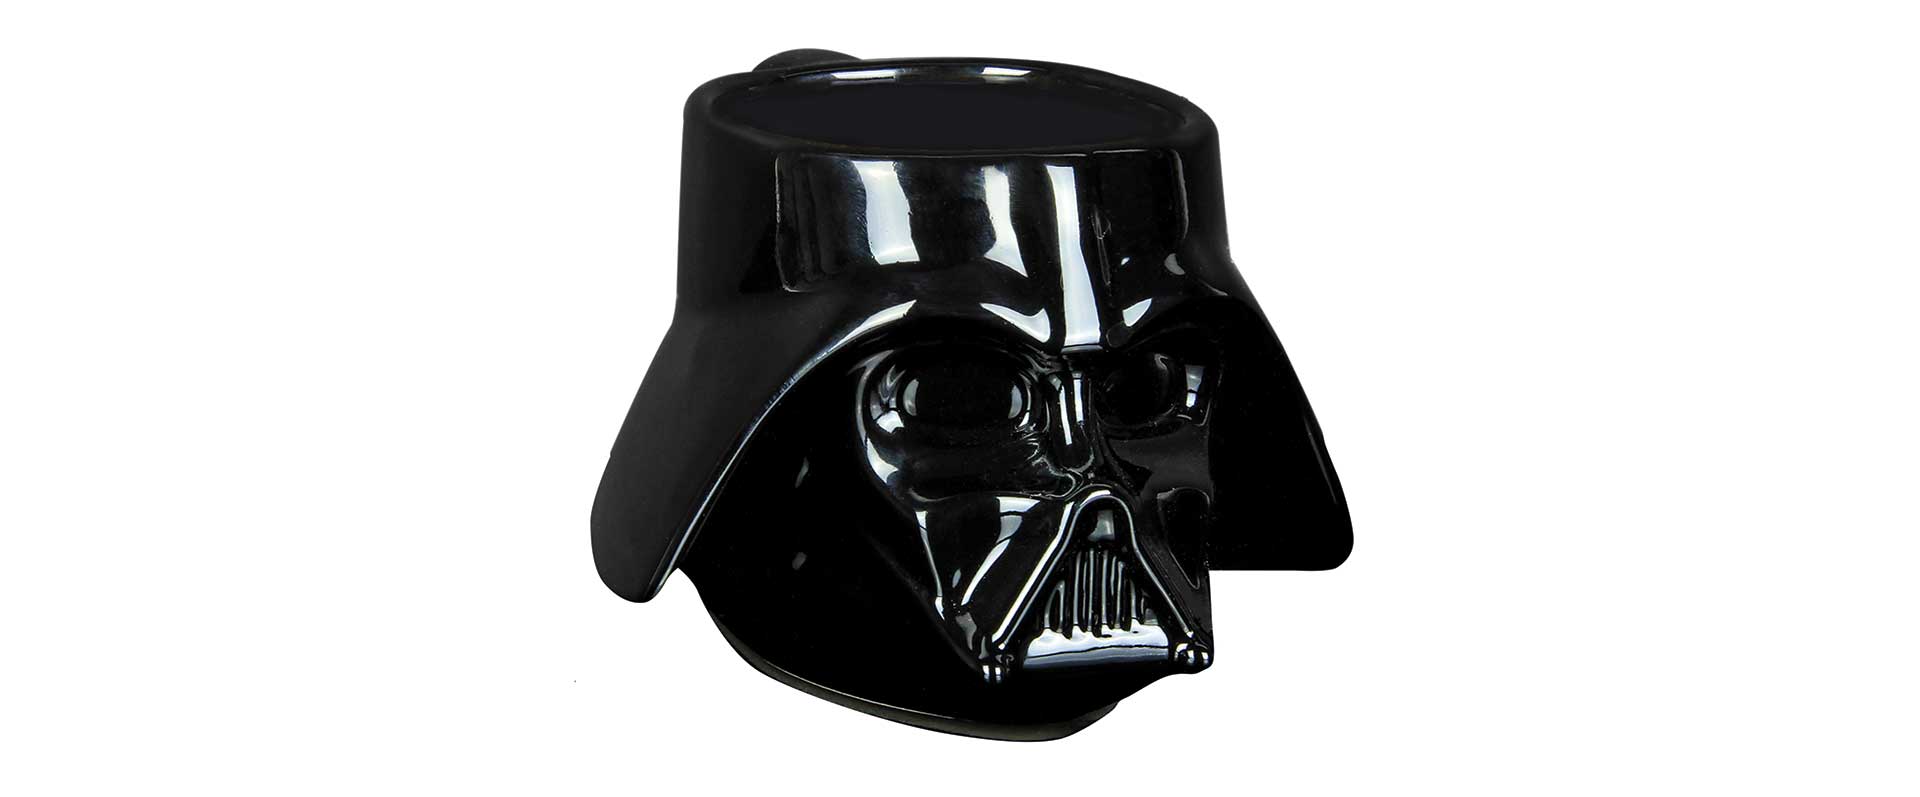 Paladone-Star-Wars-Darth-Vader-Mug